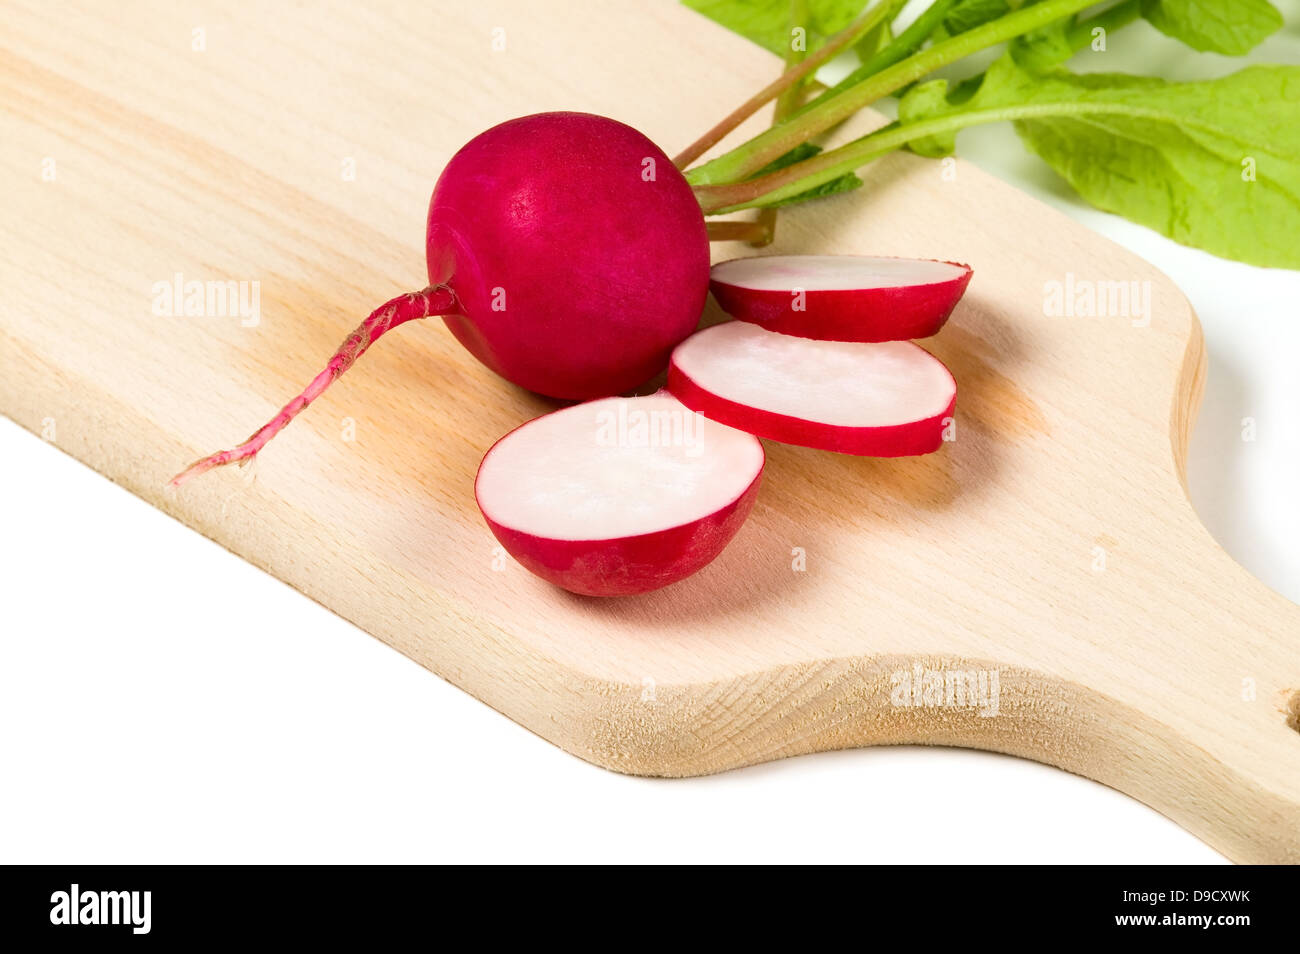 Fresh radish on white background, food concept Stock Photo